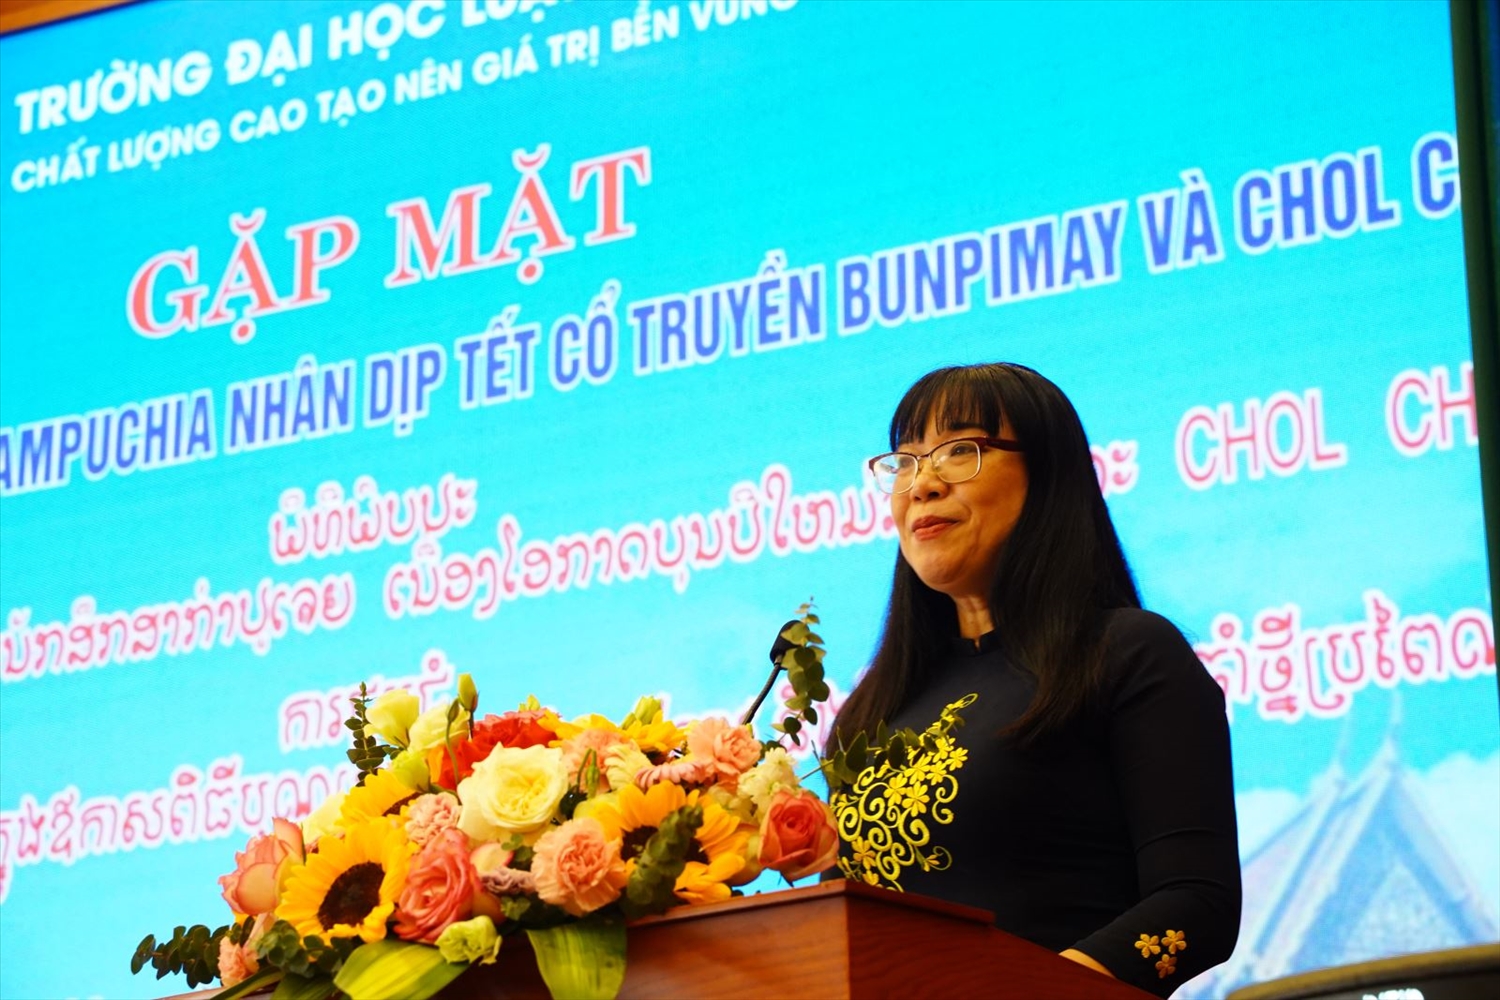 PGS. TS Vũ Thị Lan Anh - Phó Hiệu trưởng phát biểu tại chương trình.